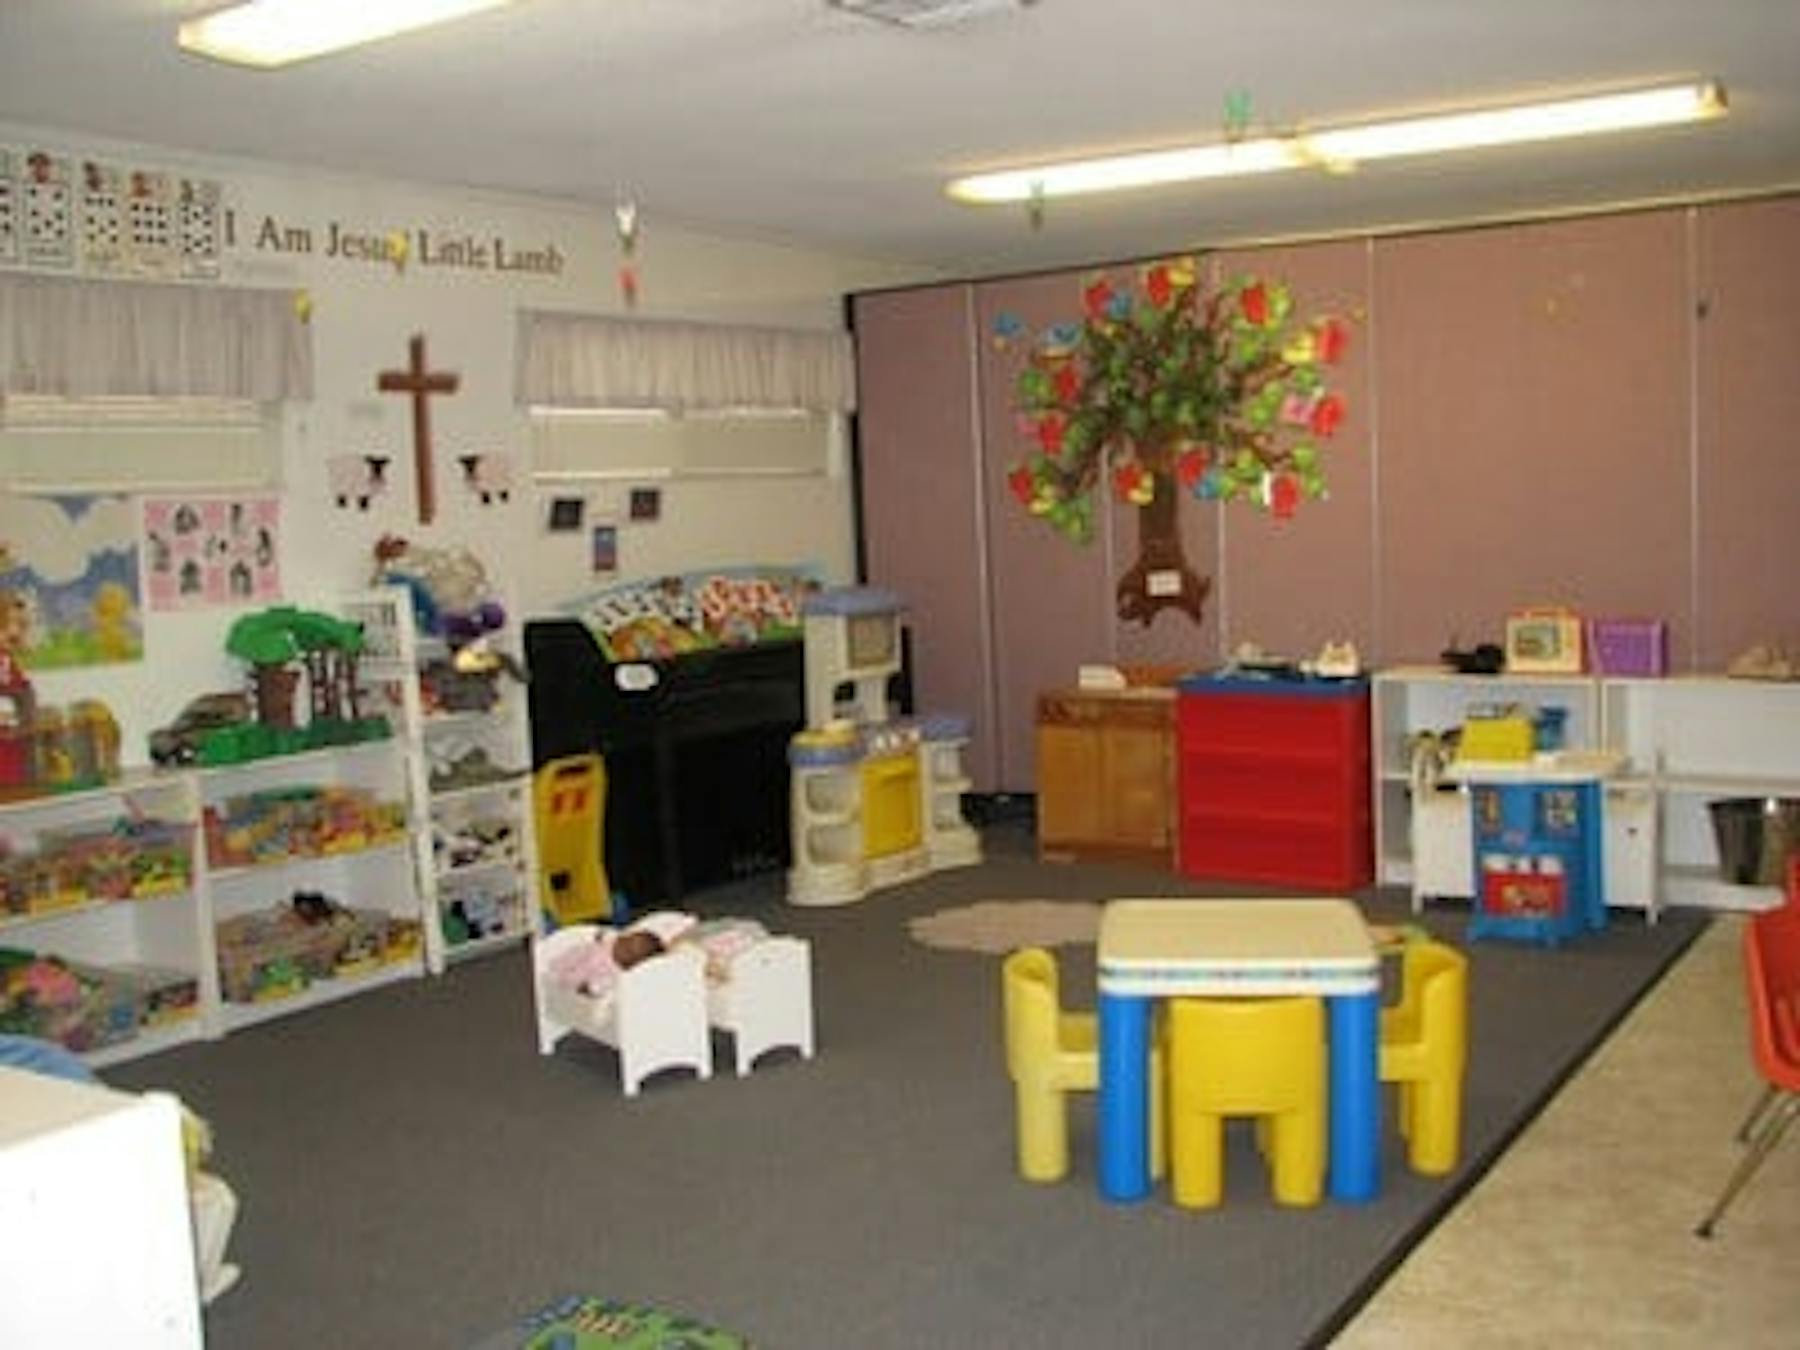 Christ Lutheran School Preschool in Brea, CA Winnie